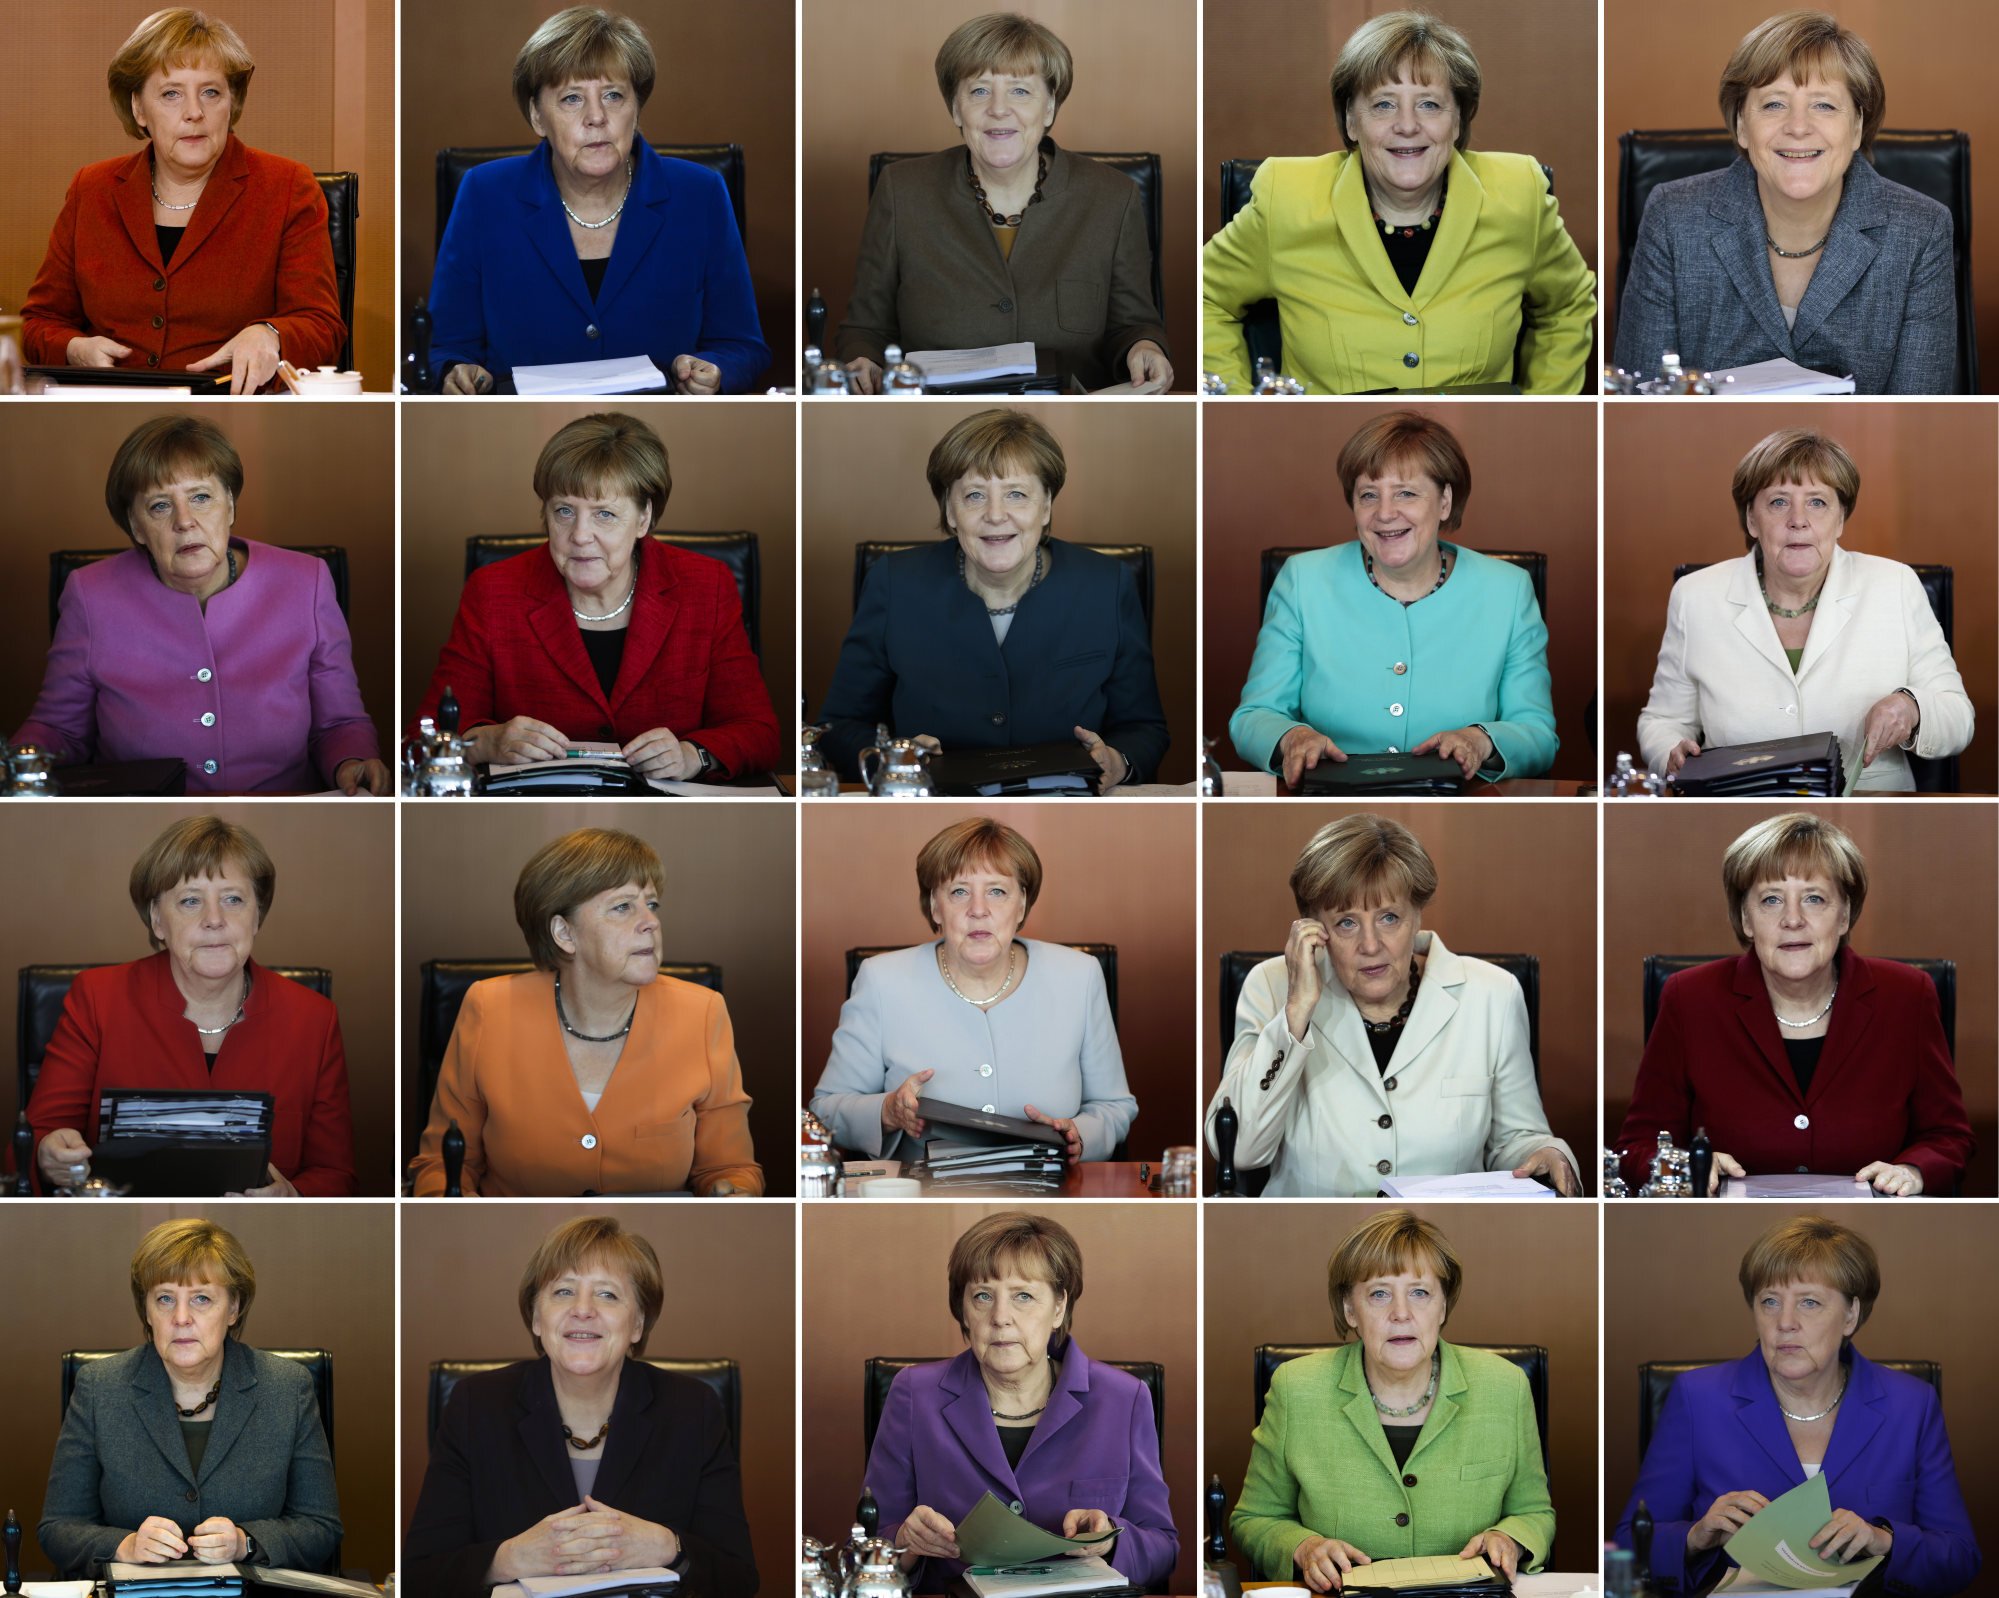 Xuyên suốt những năm qua tại các cuộc họp nội các hàng tuần của chính phủ, bà Angela Merkel đã có cho riêng mình bộ sưu tập áo khoác phong phủ đủ màu sắc bên cạnh mái tóc ngắn đặc trưng của bà. Bà từng cho biết, bà không bảo thủ song mái tóc ngắn, mái bằng là kiểu tóc giúp bà thấy thoải mái và hợp nhất.